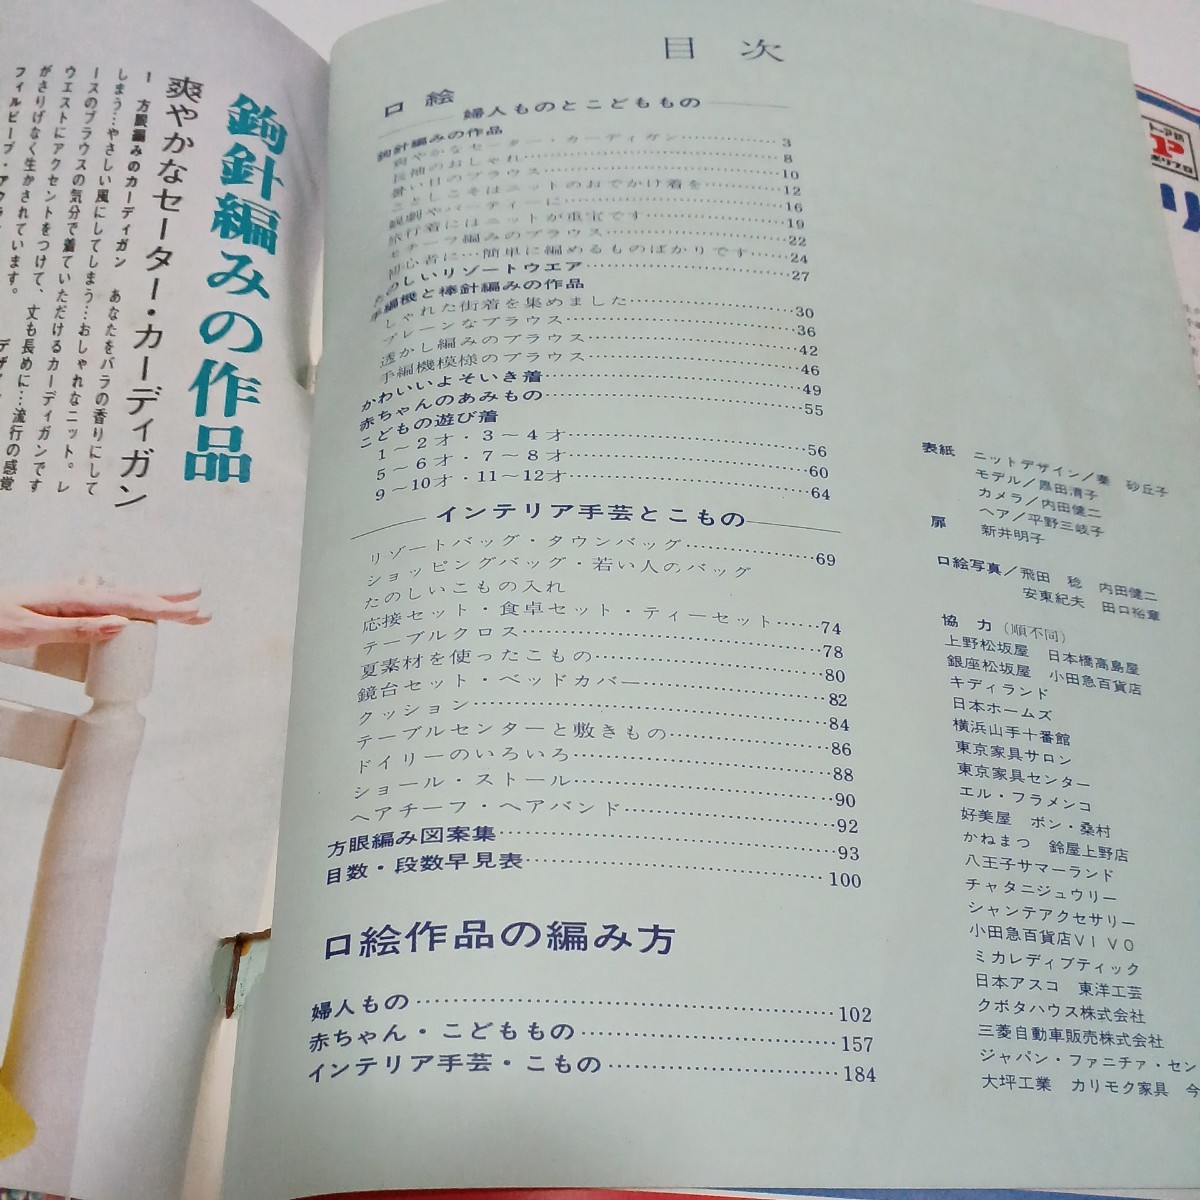 婦人生活 臨時増刊 1969年4月号 春・夏のあみもの集の画像2